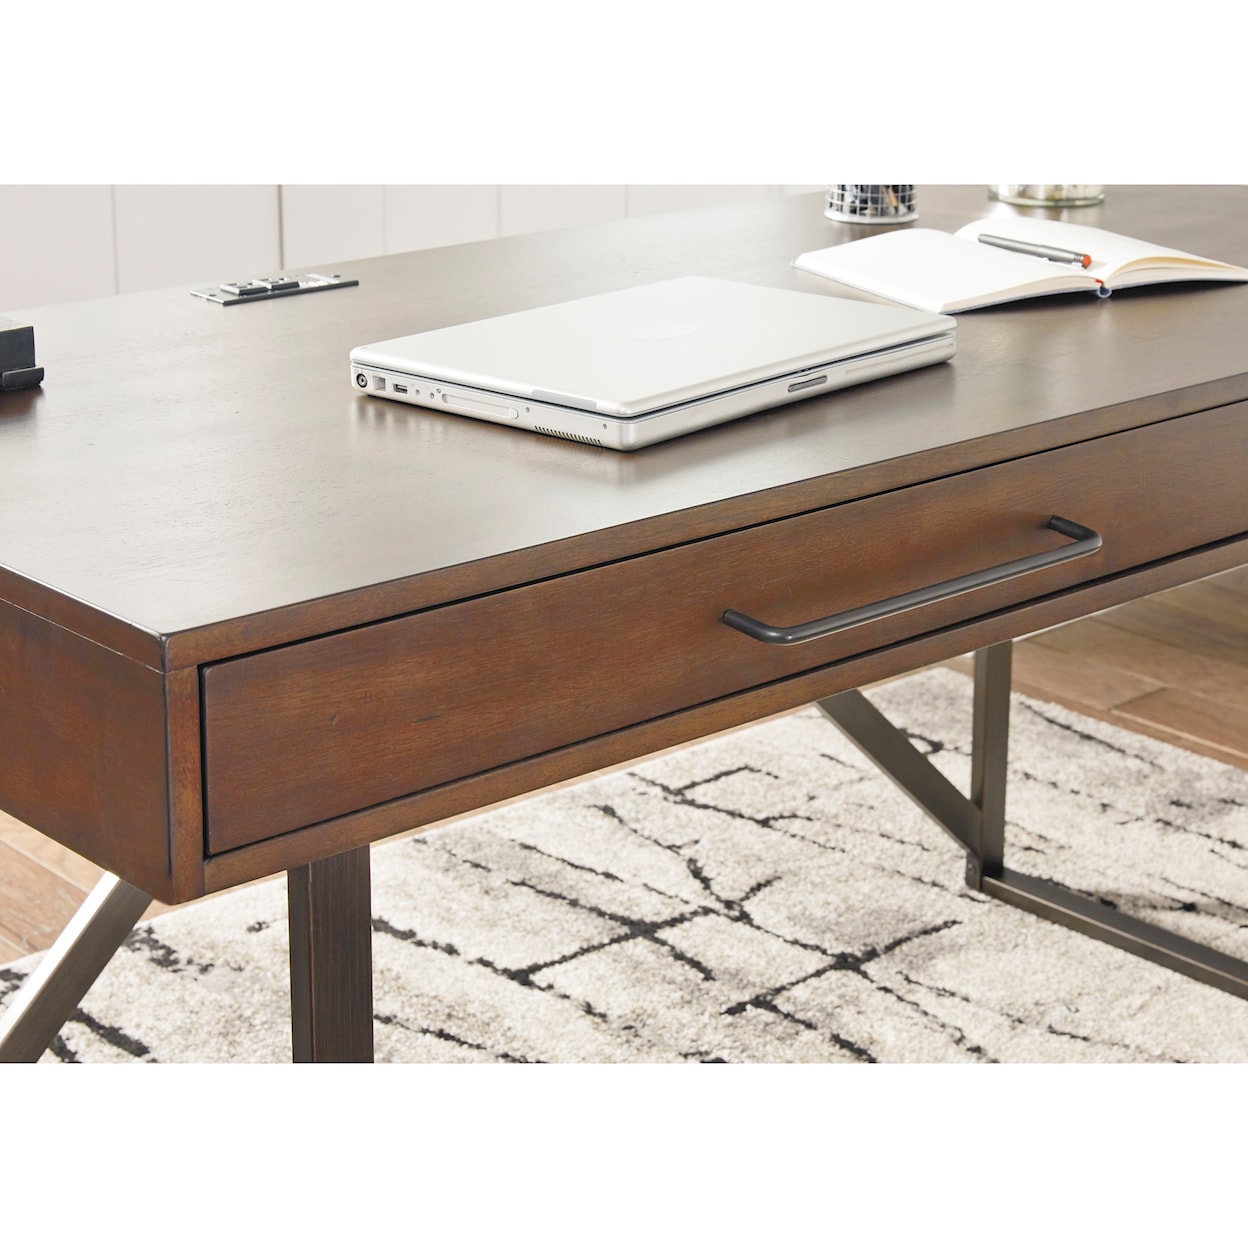 Signature Design Starmore Home Office Desk